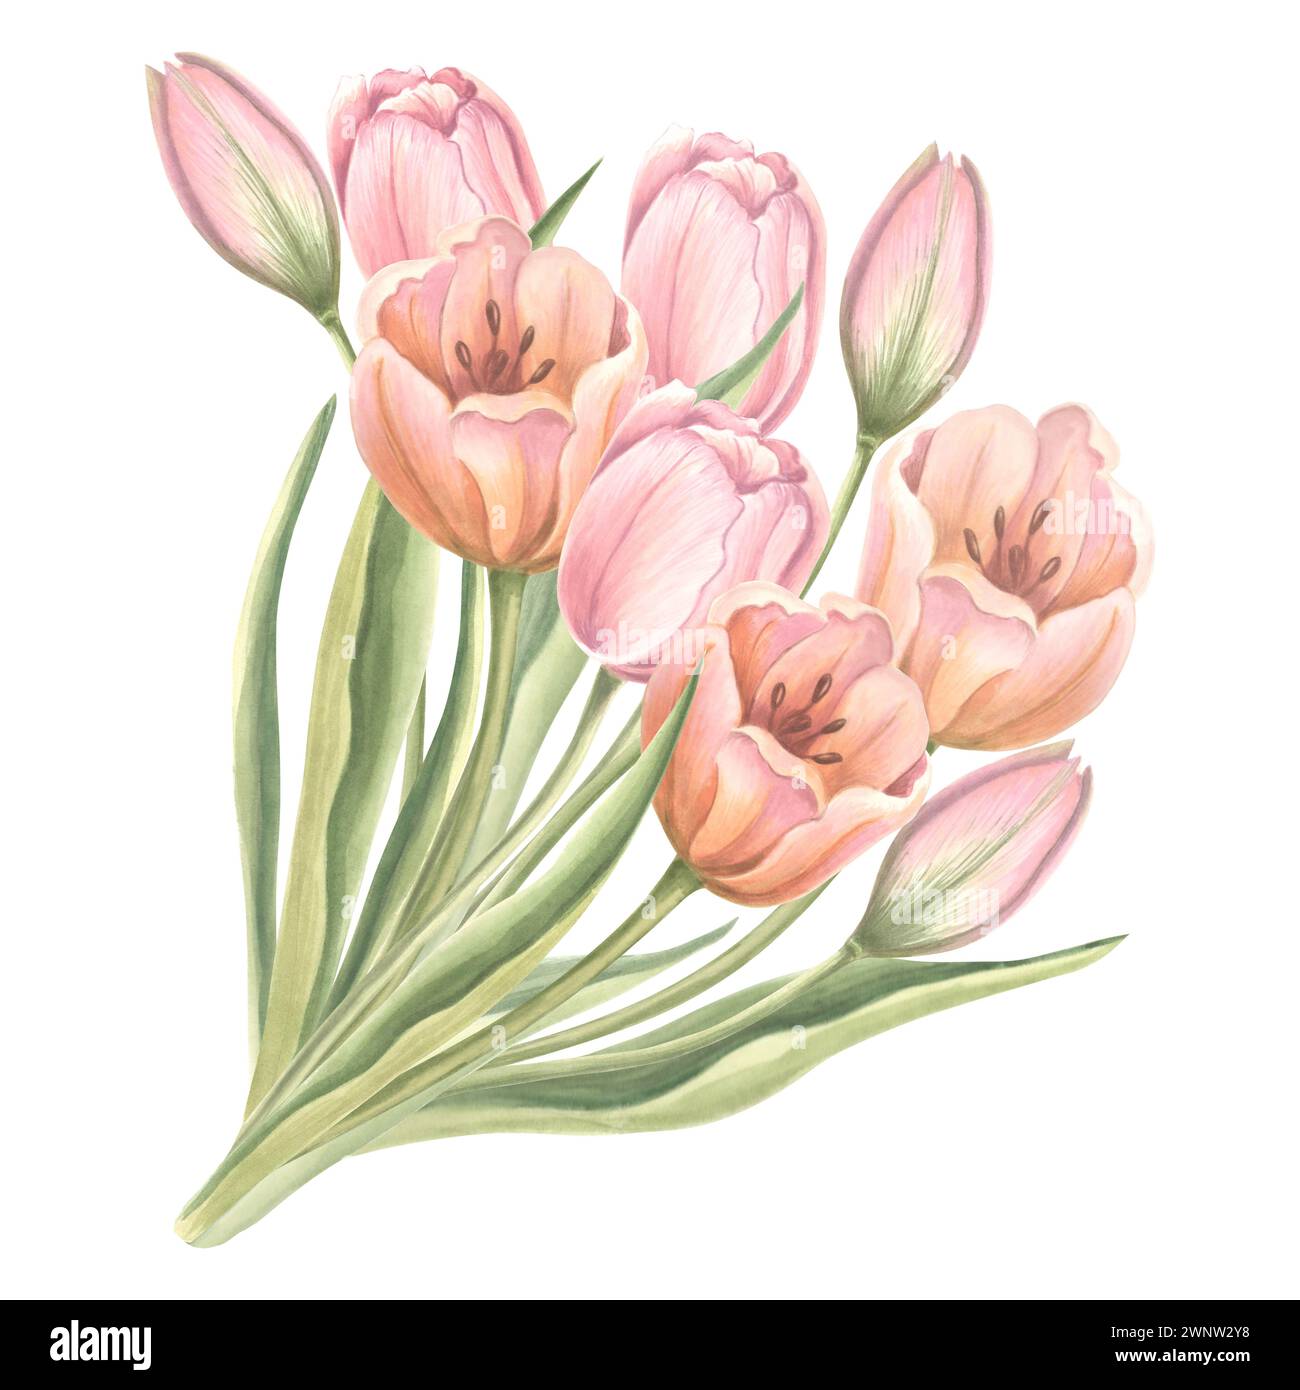 Bouquet de fleurs de tulipes avec des feuilles. Isolé illustration d'aquarelle dessinée à la main jardin fleur de printemps. Modèle de dessin floral pour carte de mères d Banque D'Images